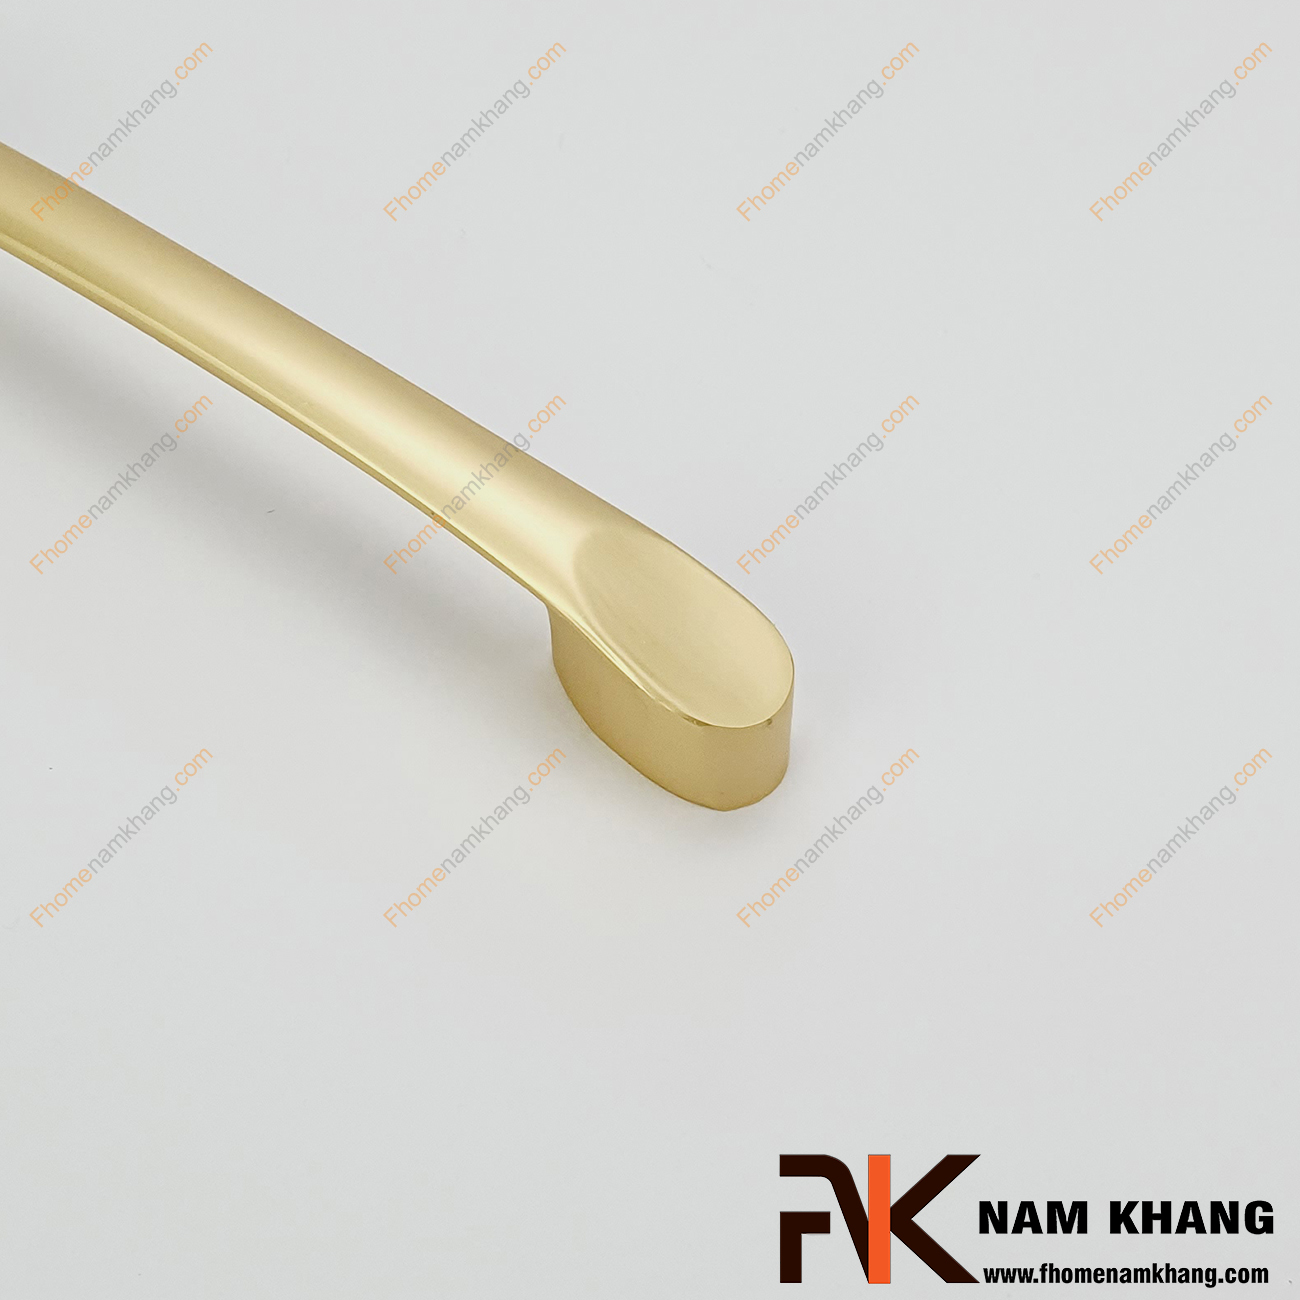 Tay nắm tủ màu vàng mờ bo tròn góc NK236L-VM là dòng tay nắm tủ mang phong cách nhỏ gọn, tiện dụng dạng thanh tròn bằng vật liệu hợp kim cao cấp.